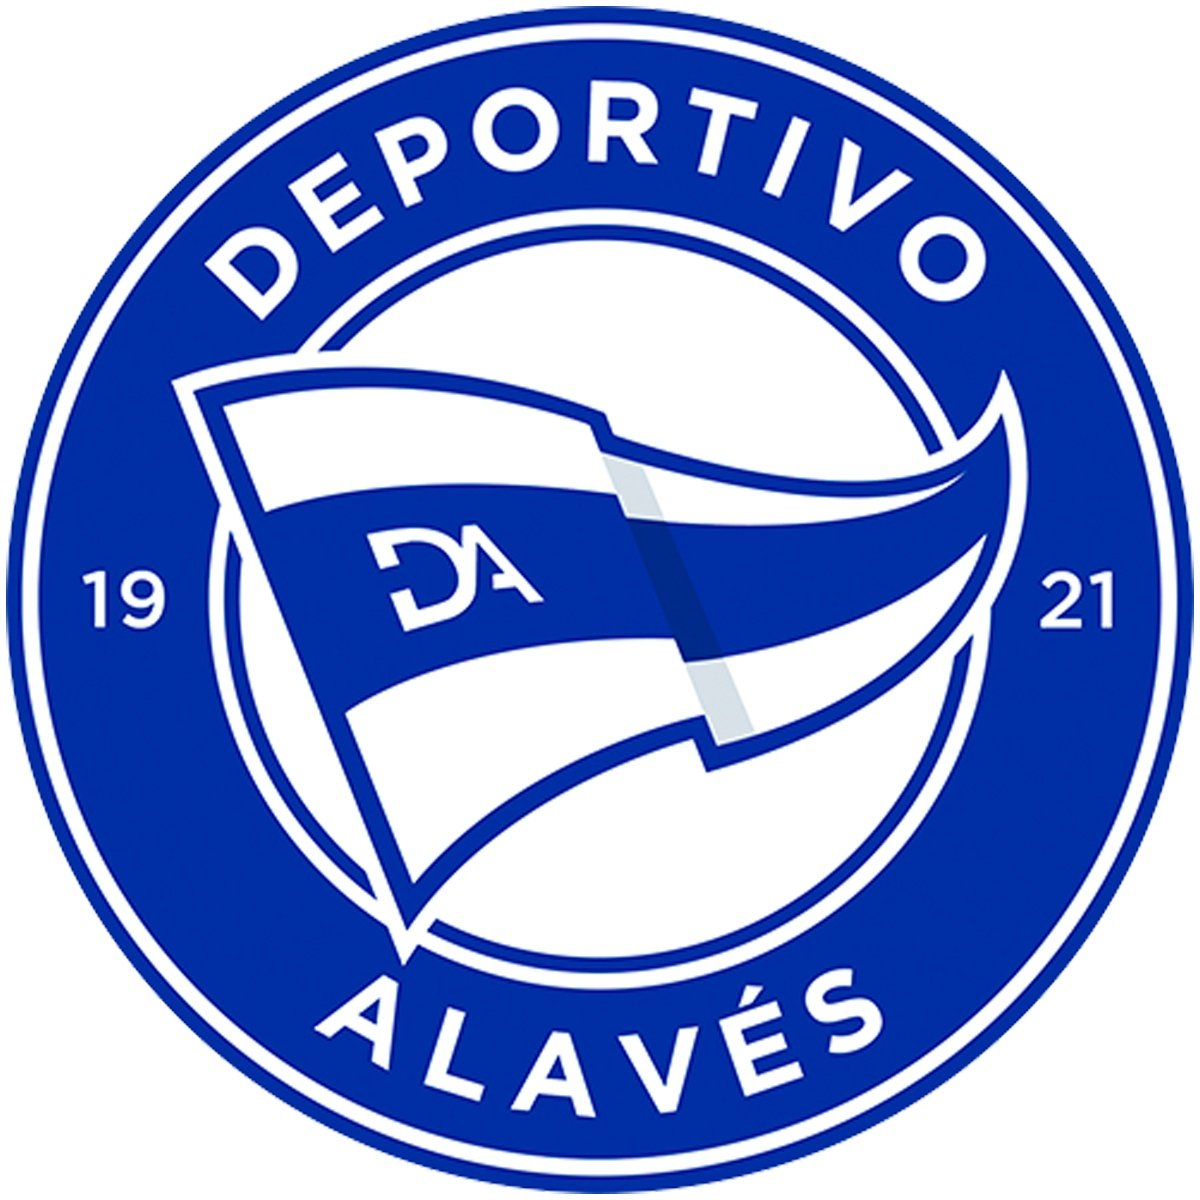 Deportivo Alavés Sub 19 B